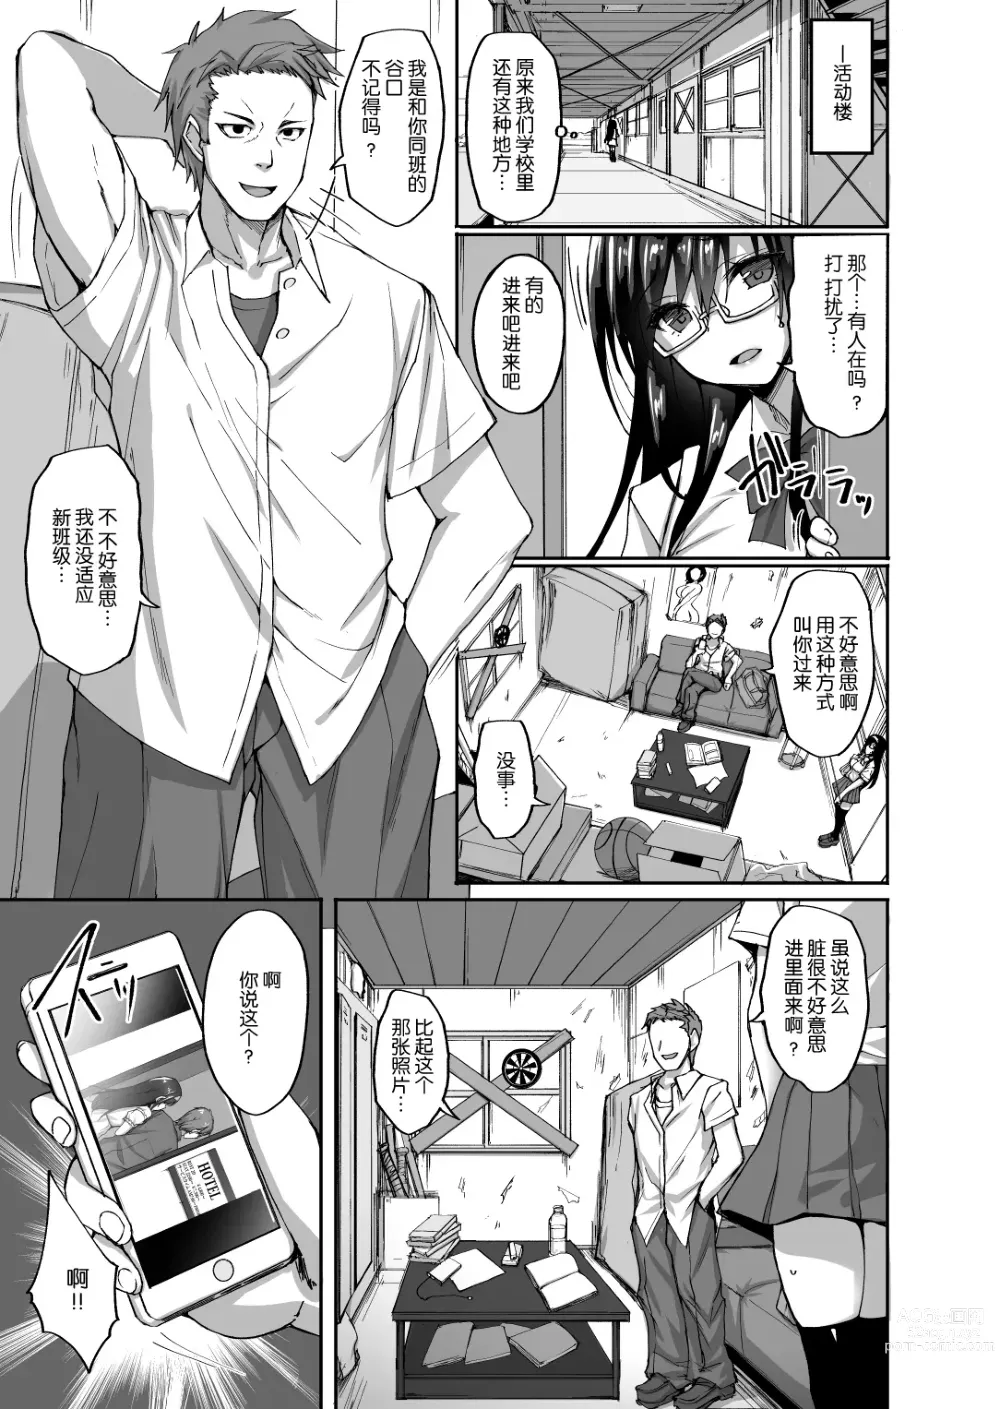 Page 16 of manga Netorare Kouhai Kanojo - underclass girlfriends NTR Story